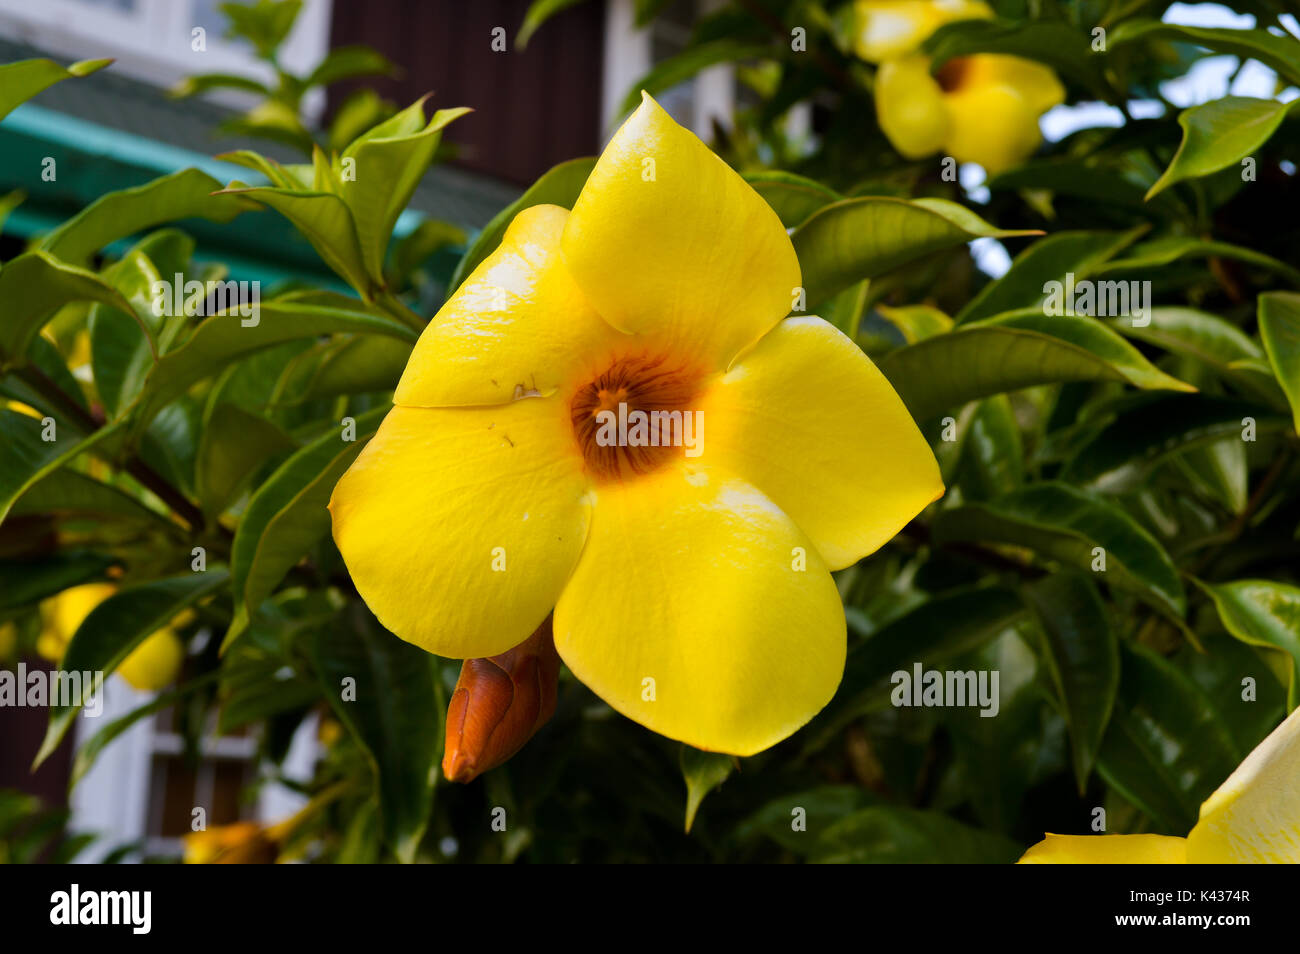 Blume-Fotografie Stockfoto